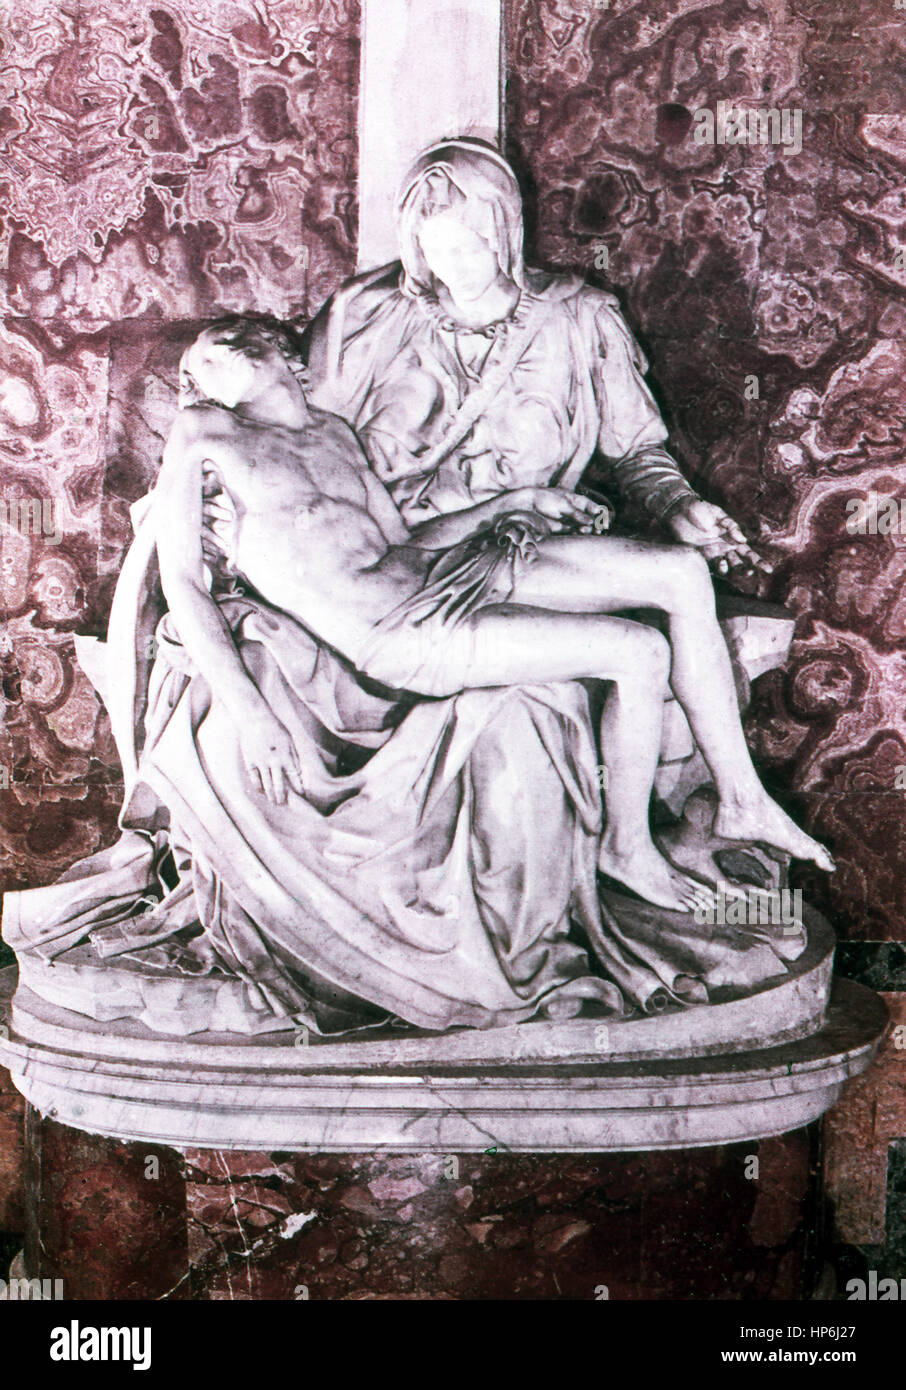 Questa scultura dello scultore italiano pittore Michelangelo (1475-1564) è intitolato pietà. Scultore, pittore e architetto Michelangelo scolpito Cristo giacente nelle braccia della madre Maria subito dopo la crocifissione. Uno dei suoi due opere più conosciute (l'altro è David), è stato completato nel 1499. Ora è ospitata nel Museo del Vaticano. La foto risale al 1964. Foto Stock